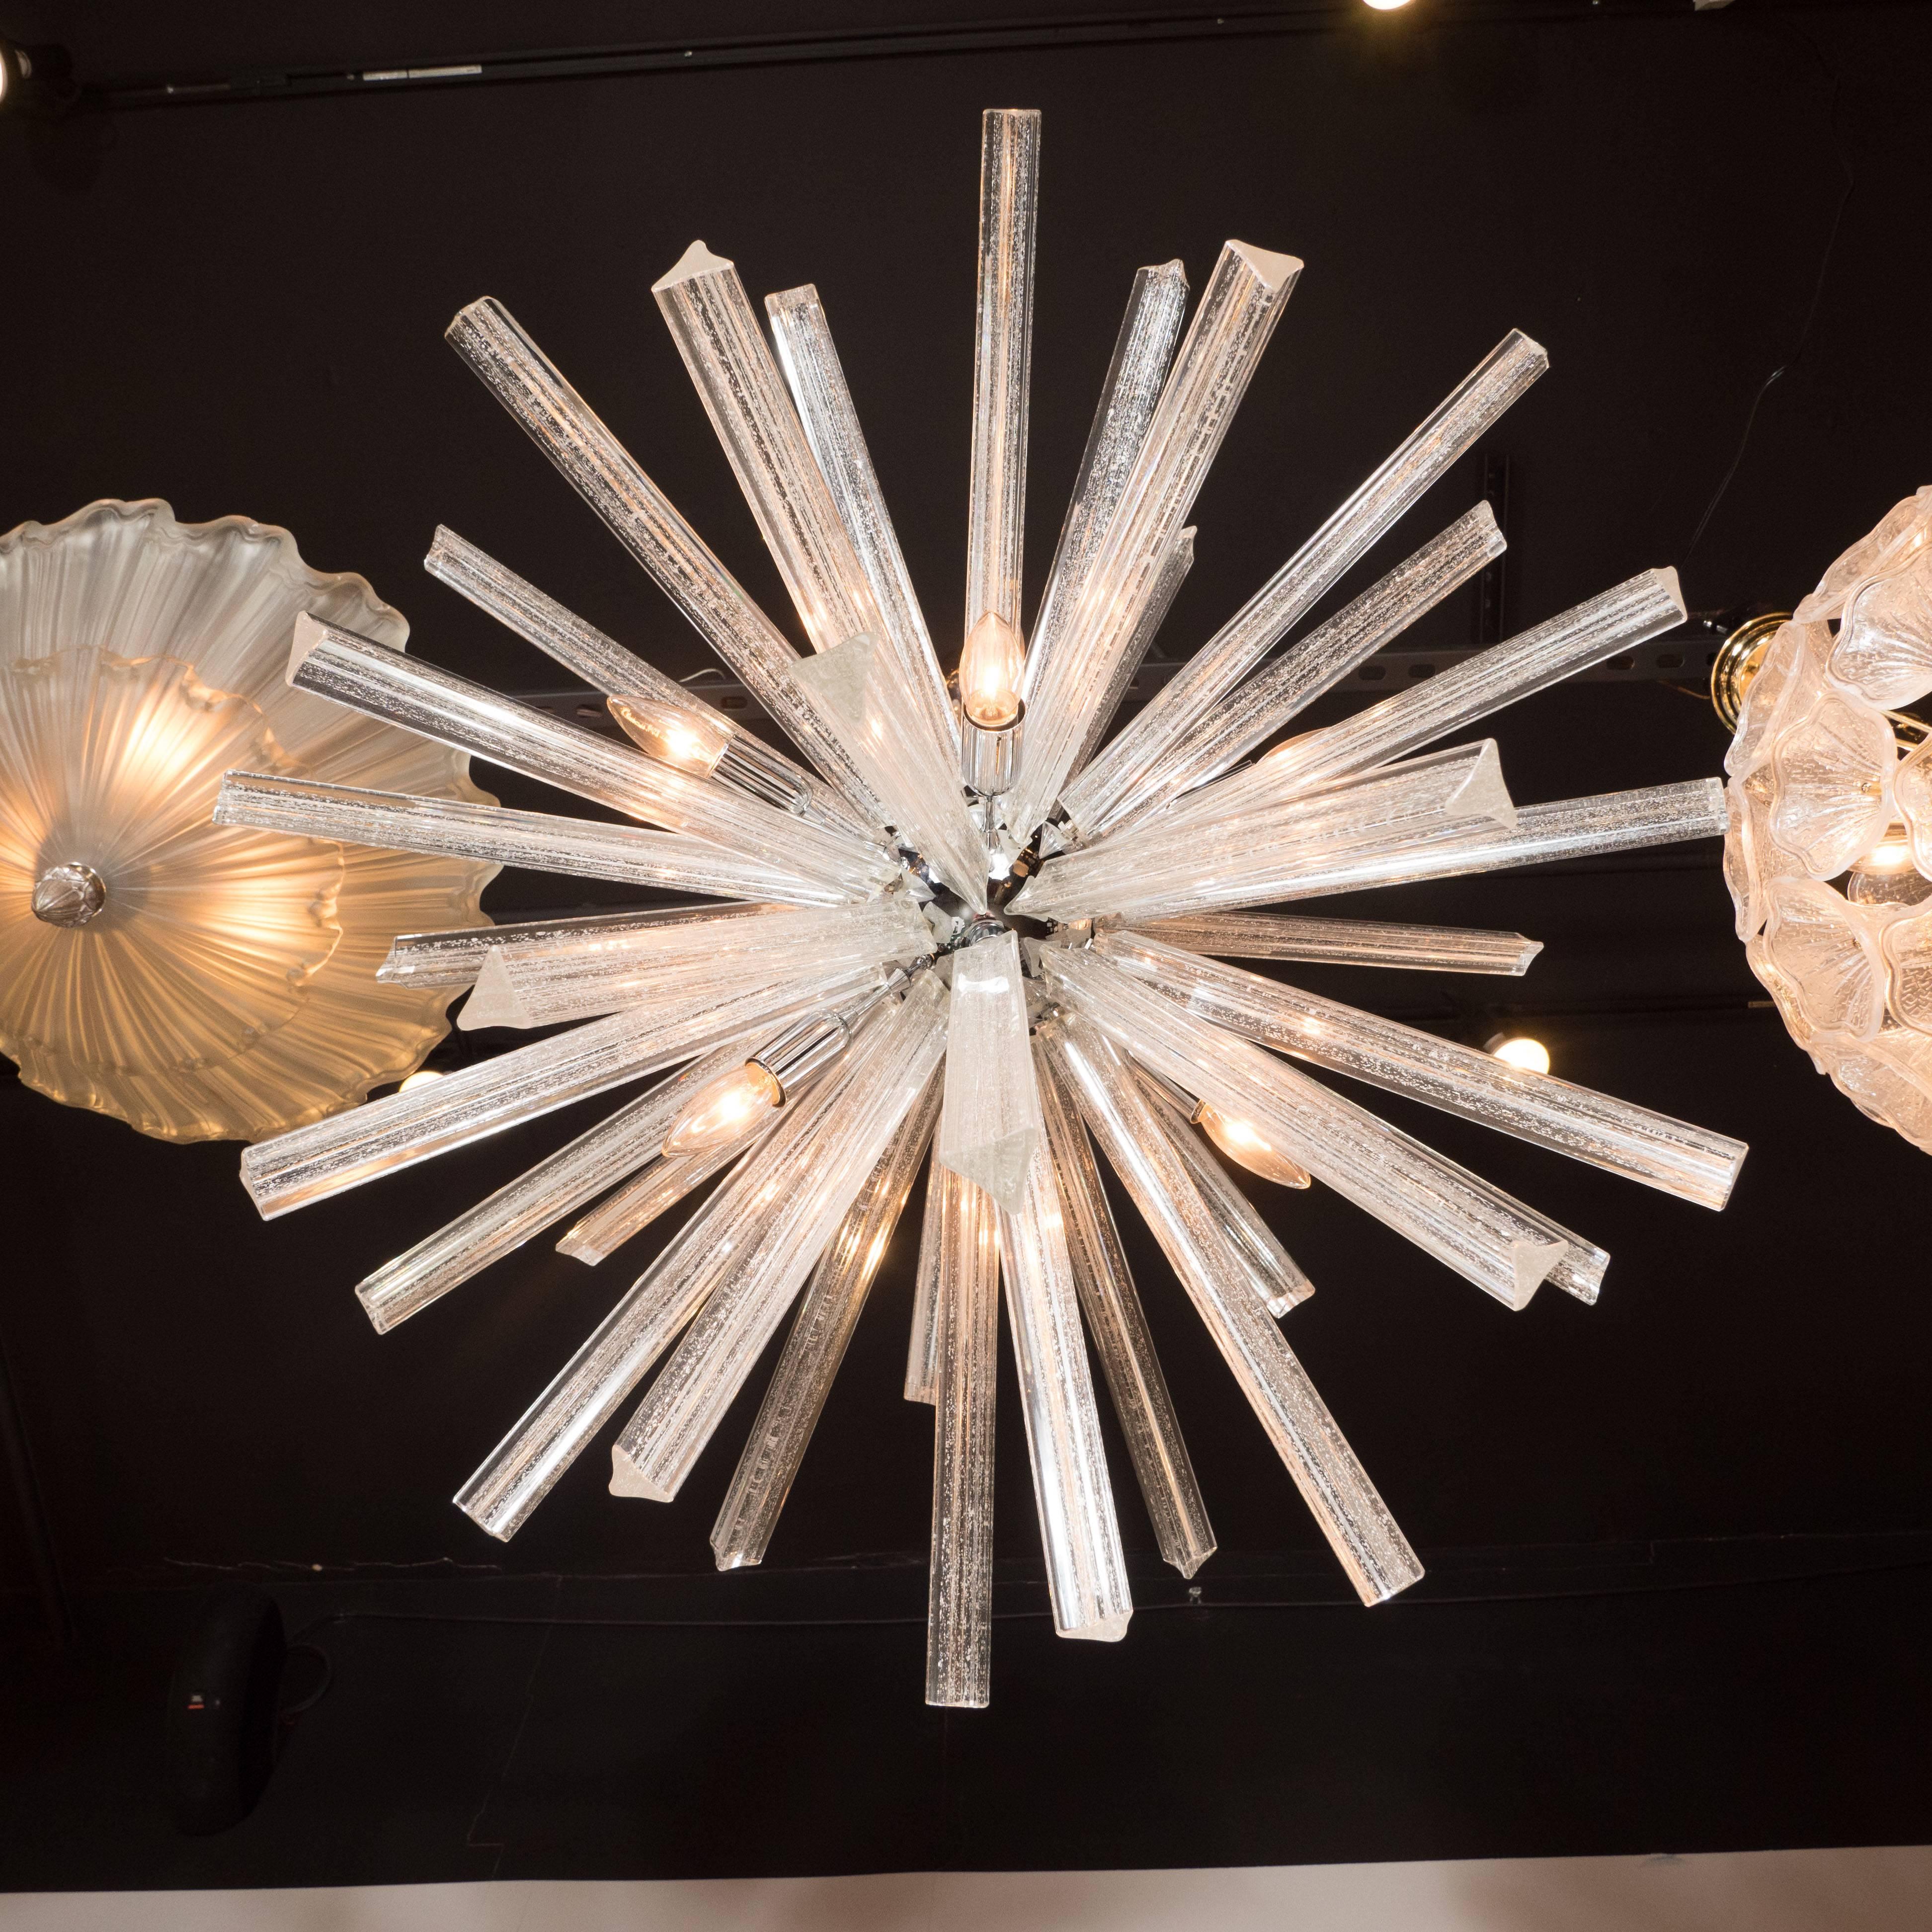 Cet exquis lustre Sputnik en verre de Murano soufflé à la main présente une abondance de cristaux Triedre - chacun d'entre eux étant agrémenté d'une profusion de mouchetures d'or blanc 24 carats - émanant d'un orbe central en chrome brillant. La